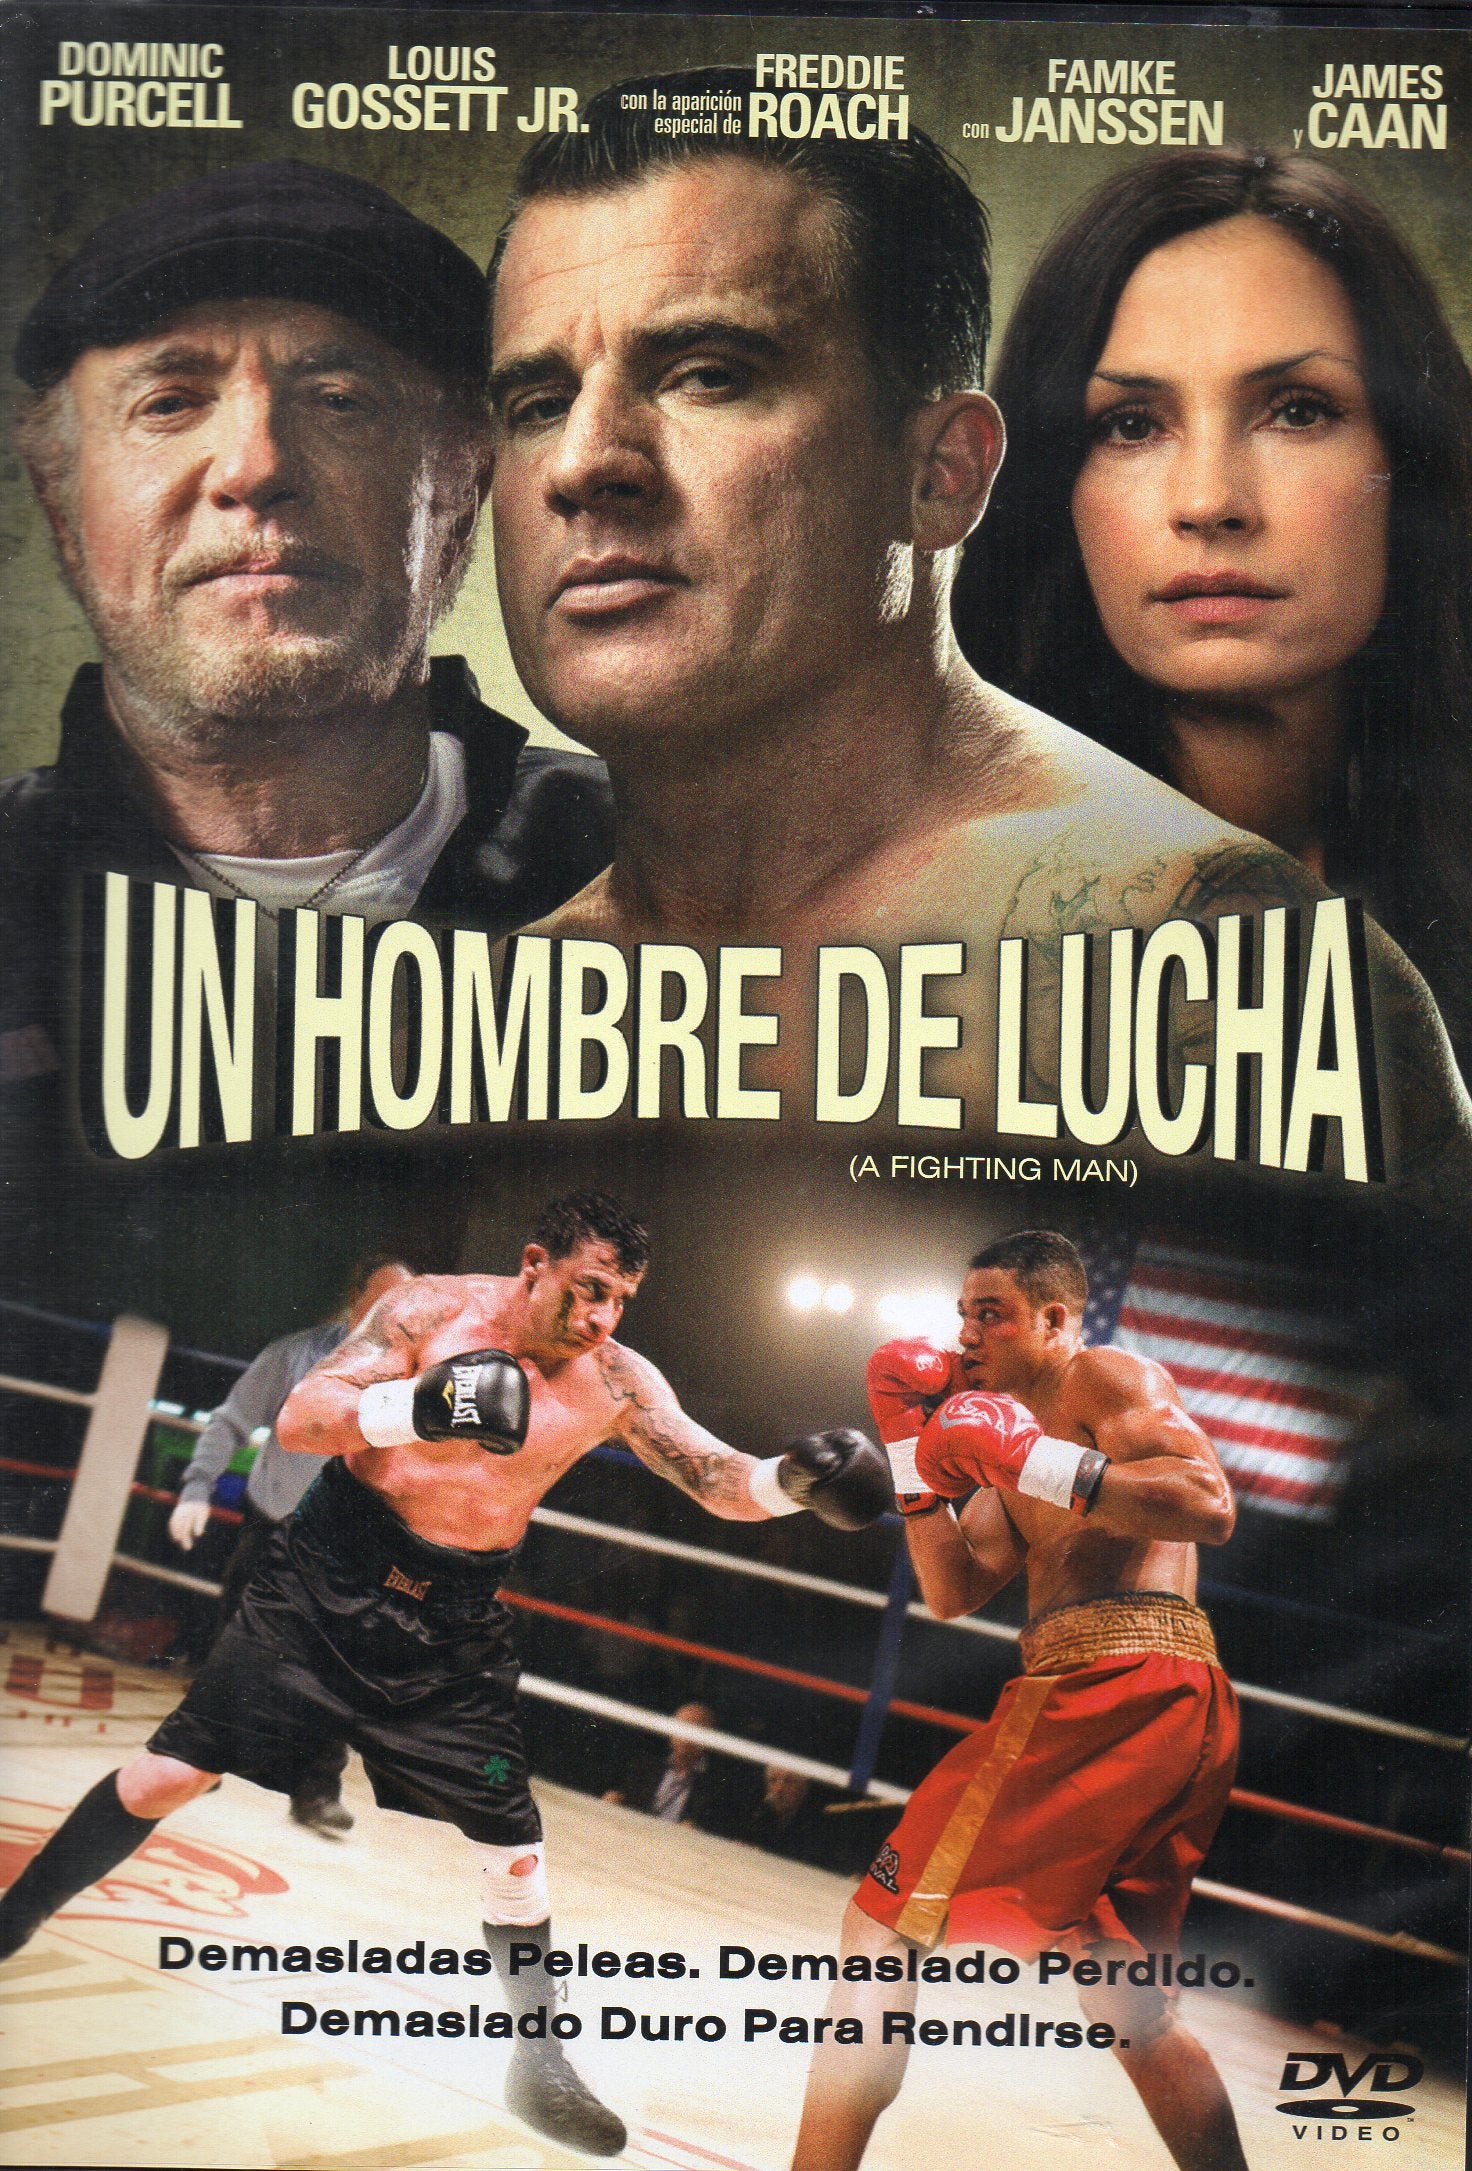 DVD UN HOMBRE DE LUCHA